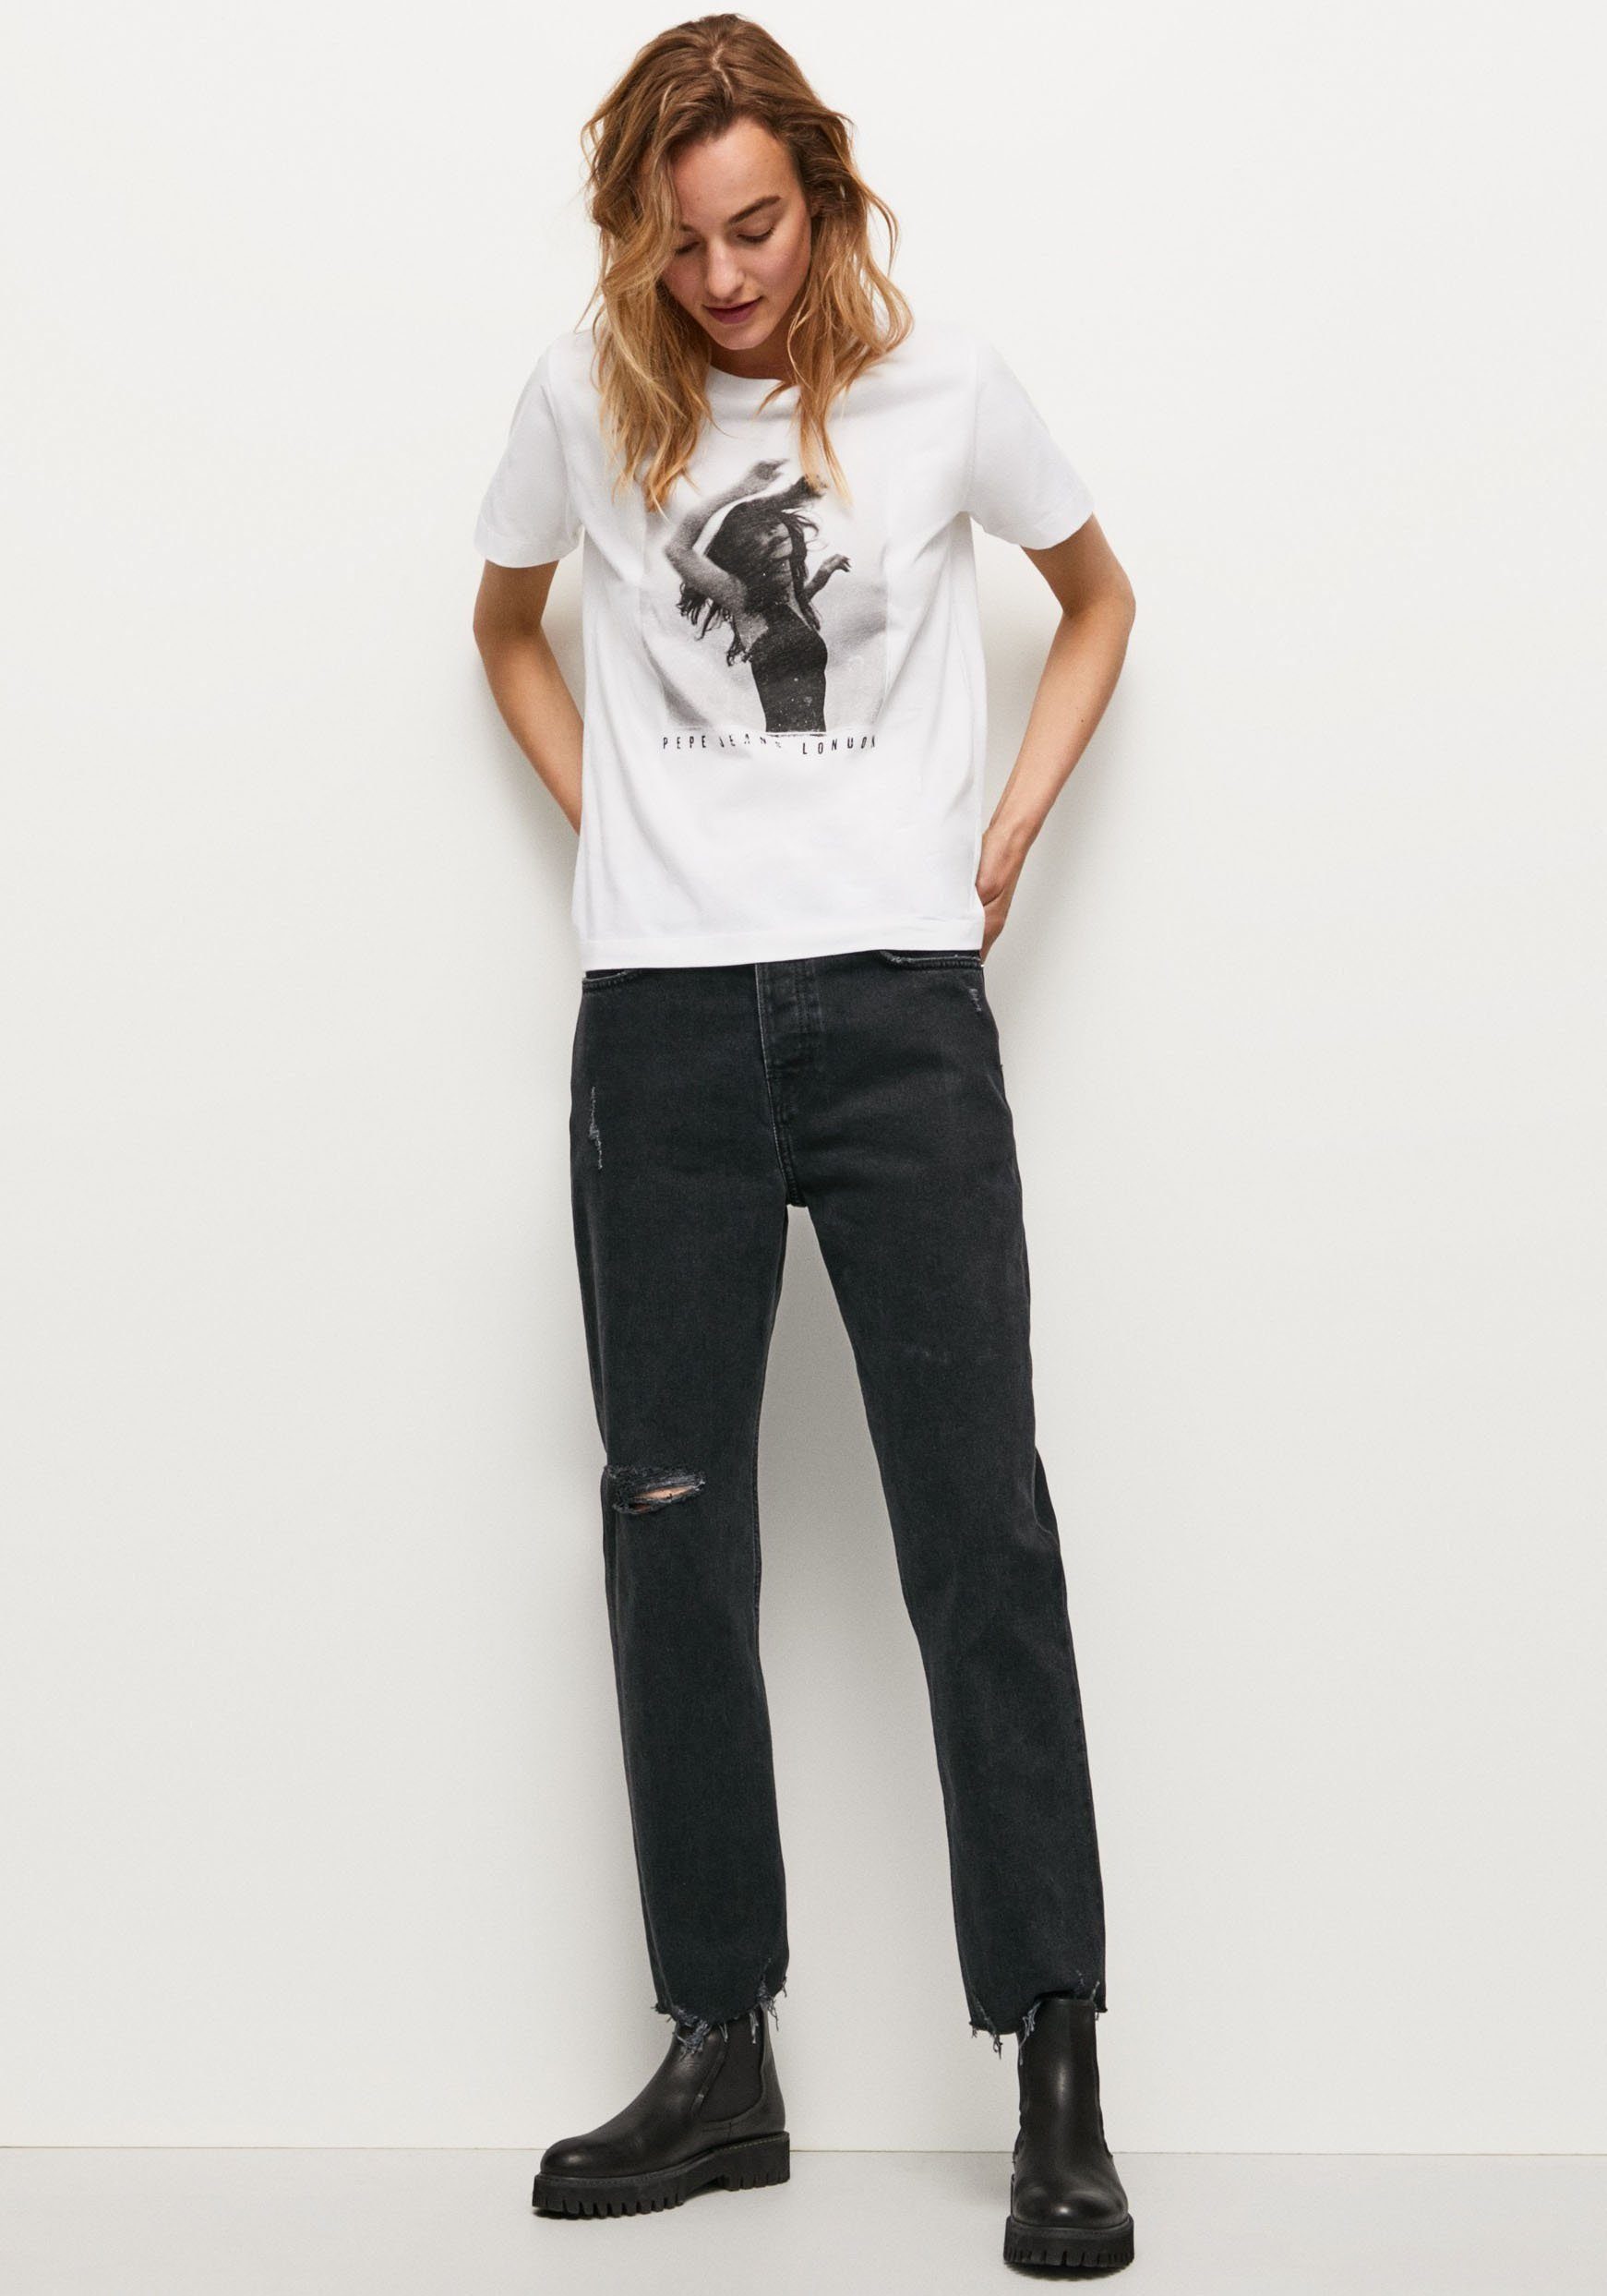 Pepe Jeans T-Shirt SONYA markentypischem in tollem Passform figurbetonter Frontprint und mit 800WHITE